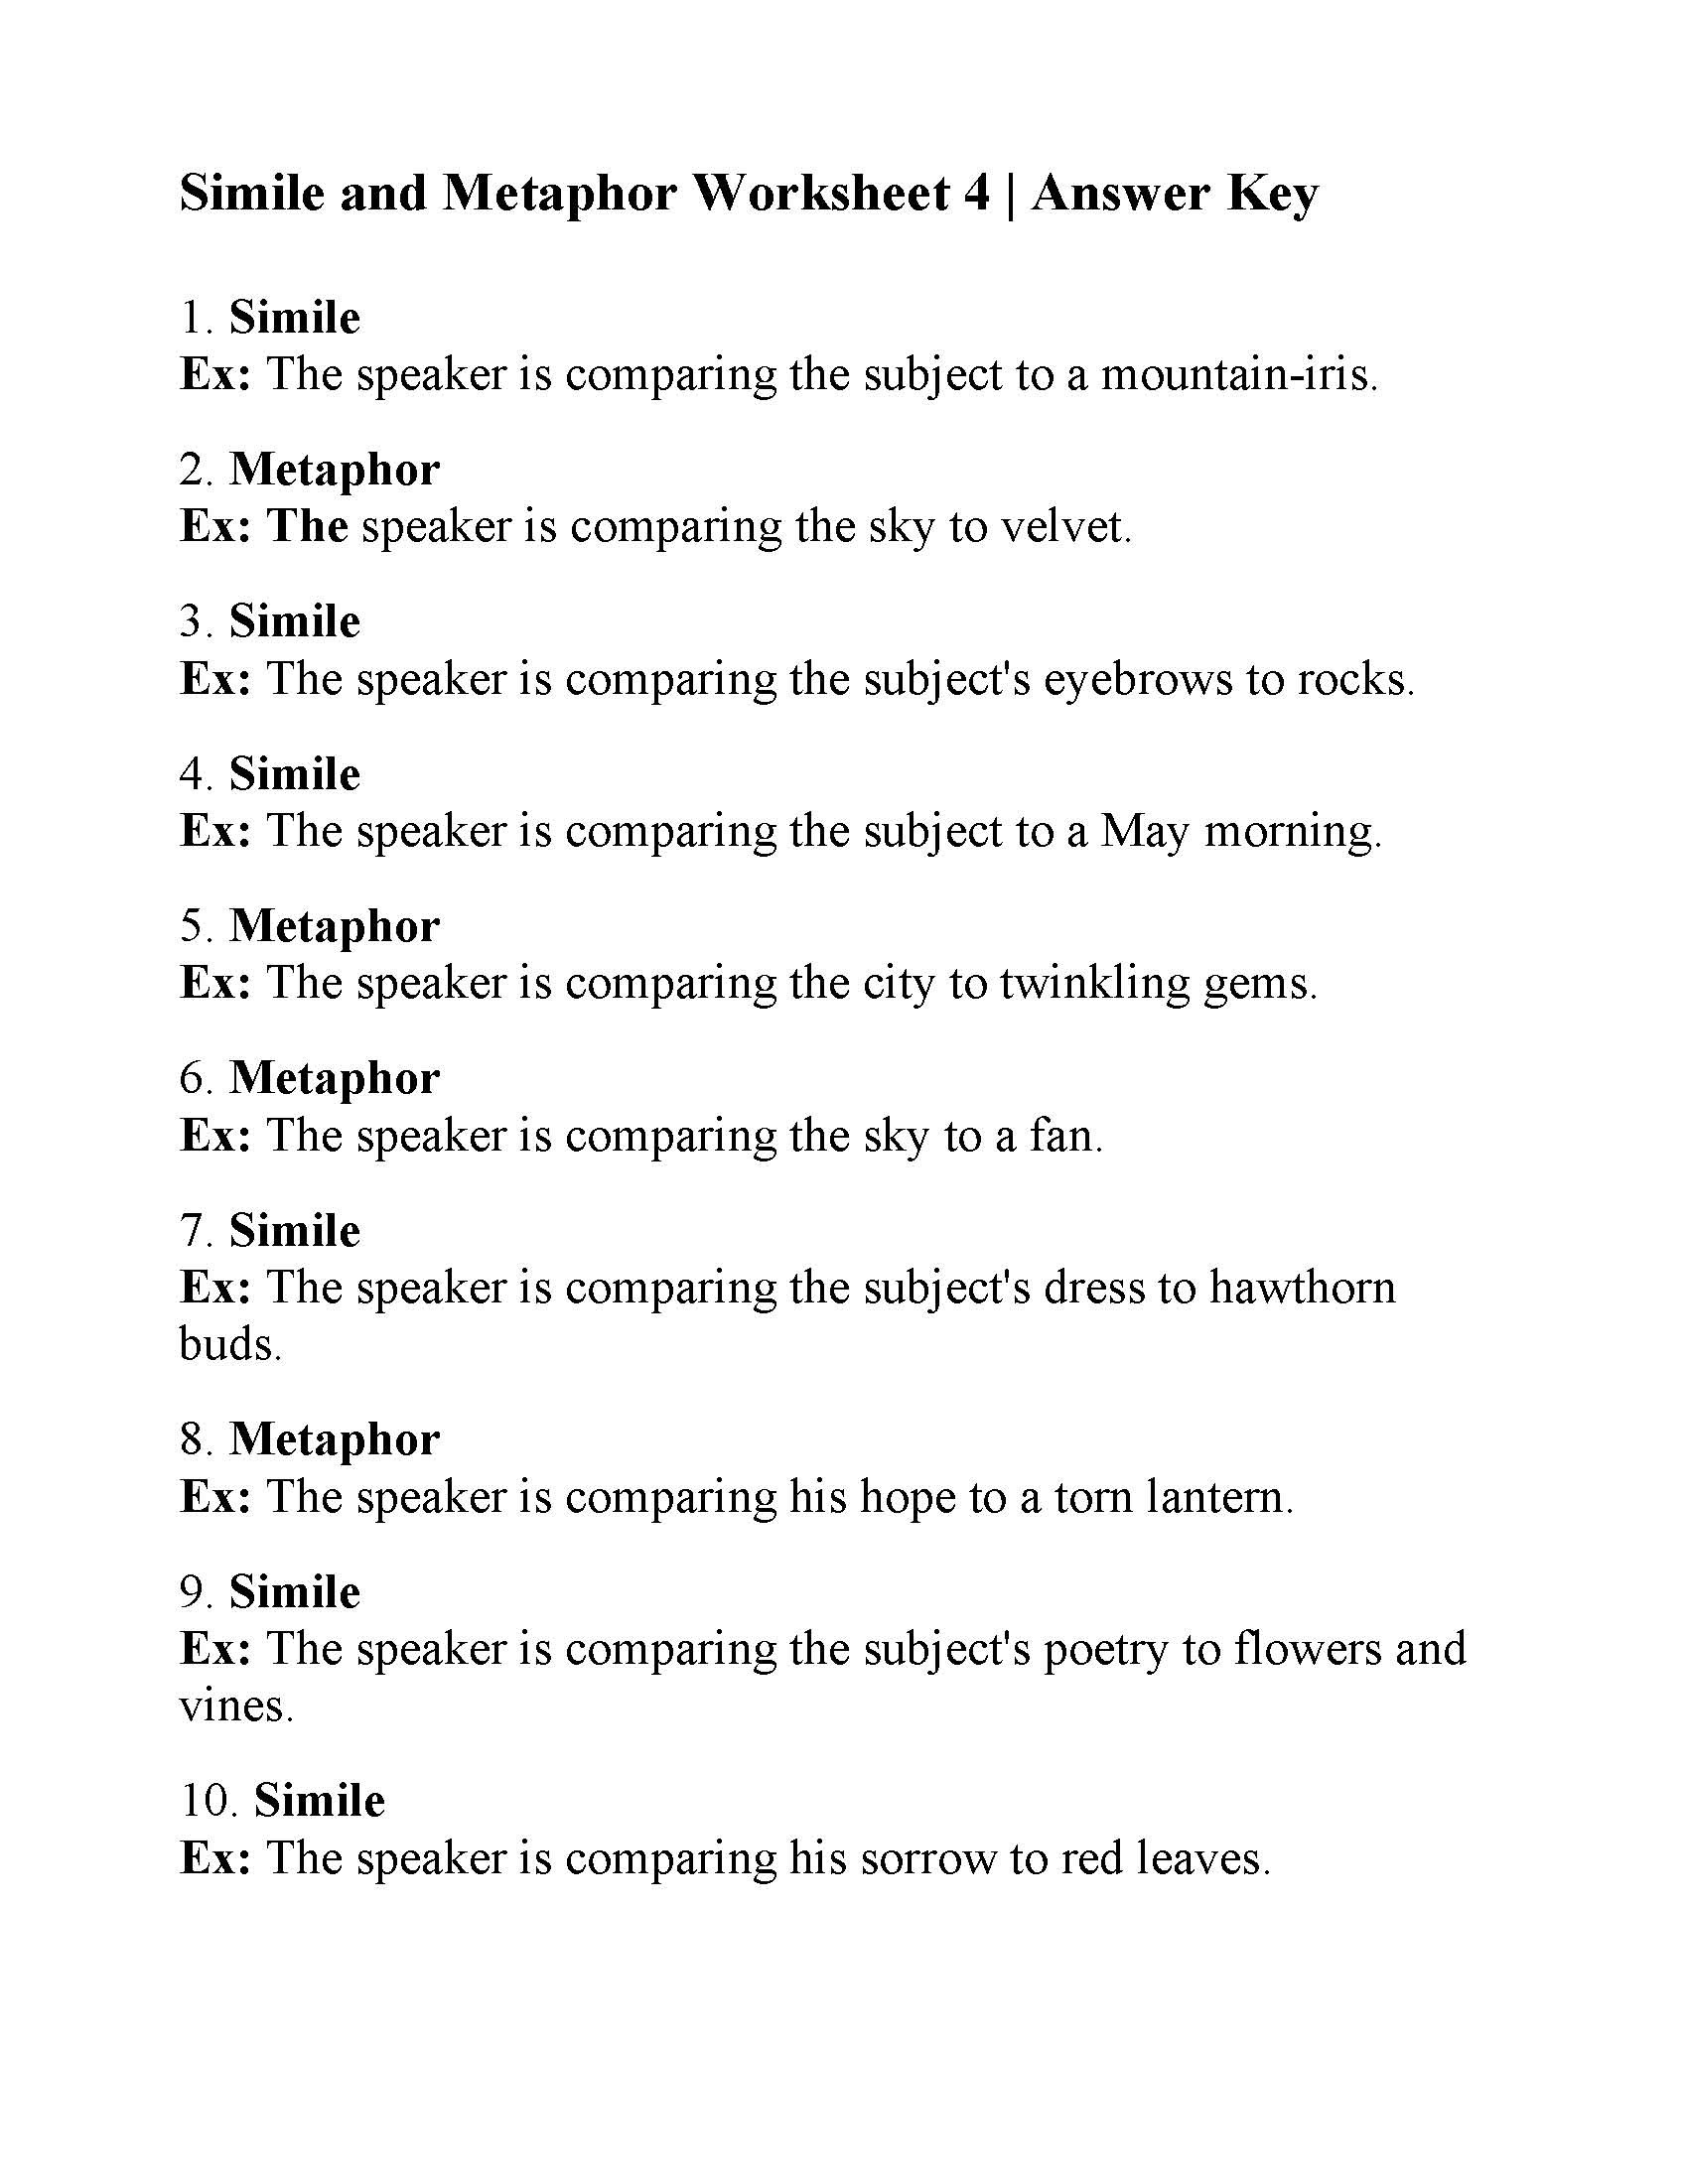 Similes and Metaphors Worksheet Simile and Metaphor Worksheet 4